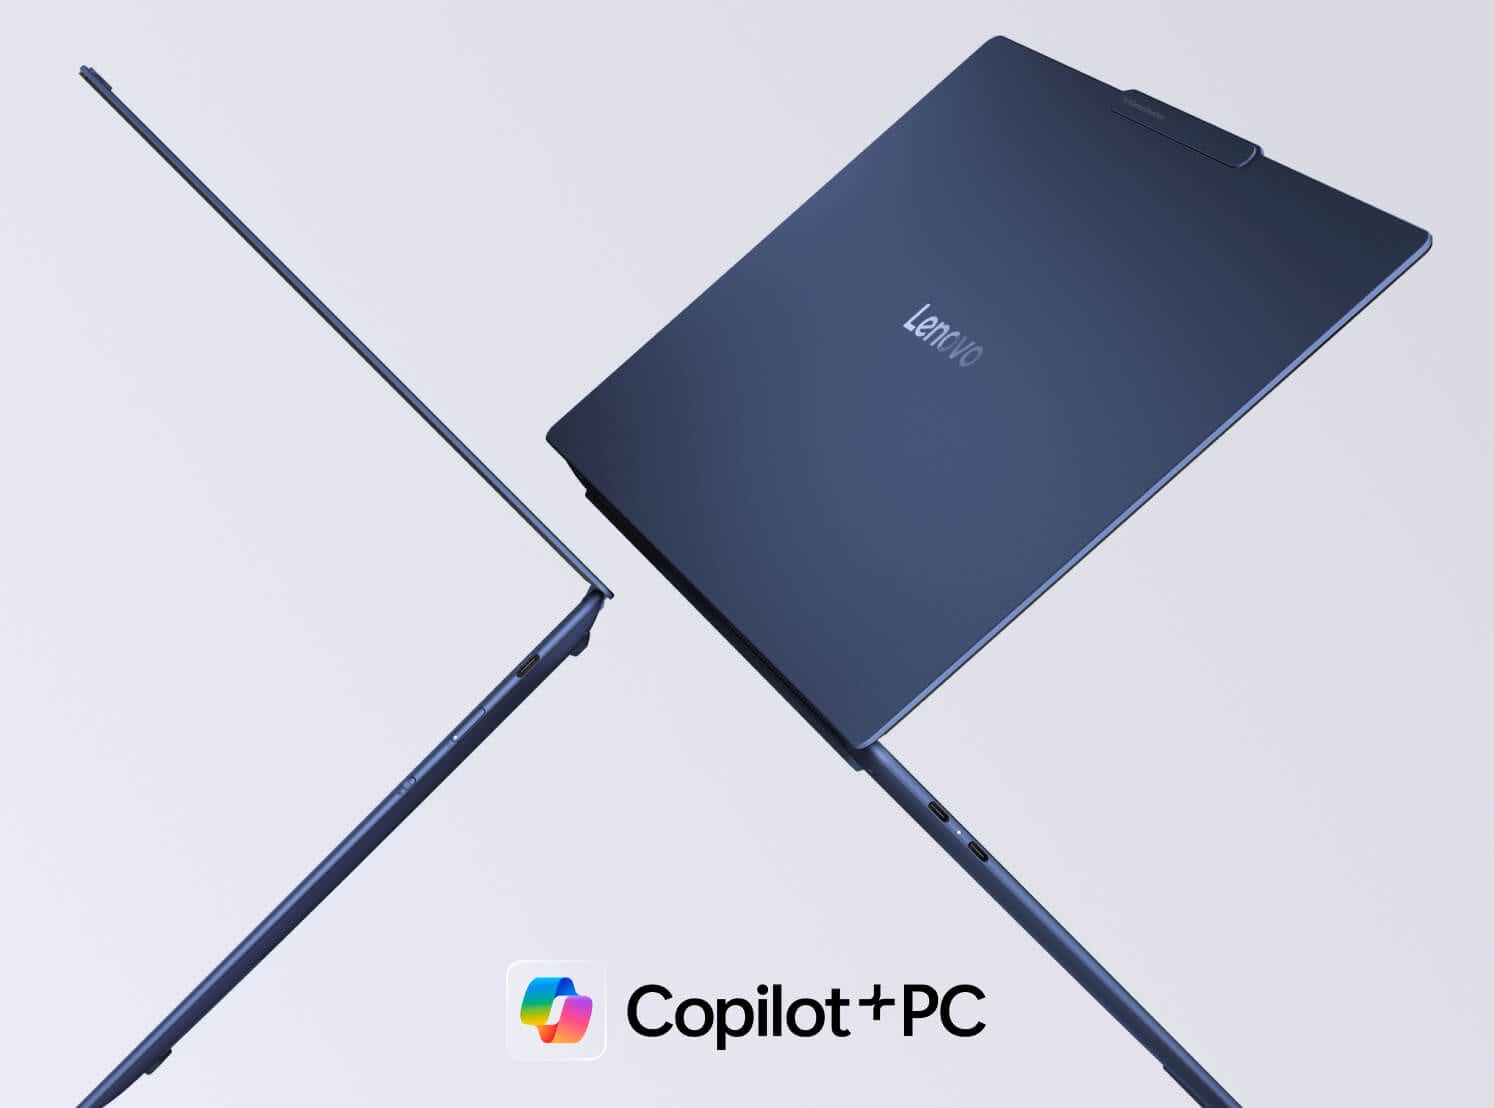 Два ноутбука Lenovo Yoga, парящие в воздухе задними панелями друг к другу, с логотипом Copilot+PC